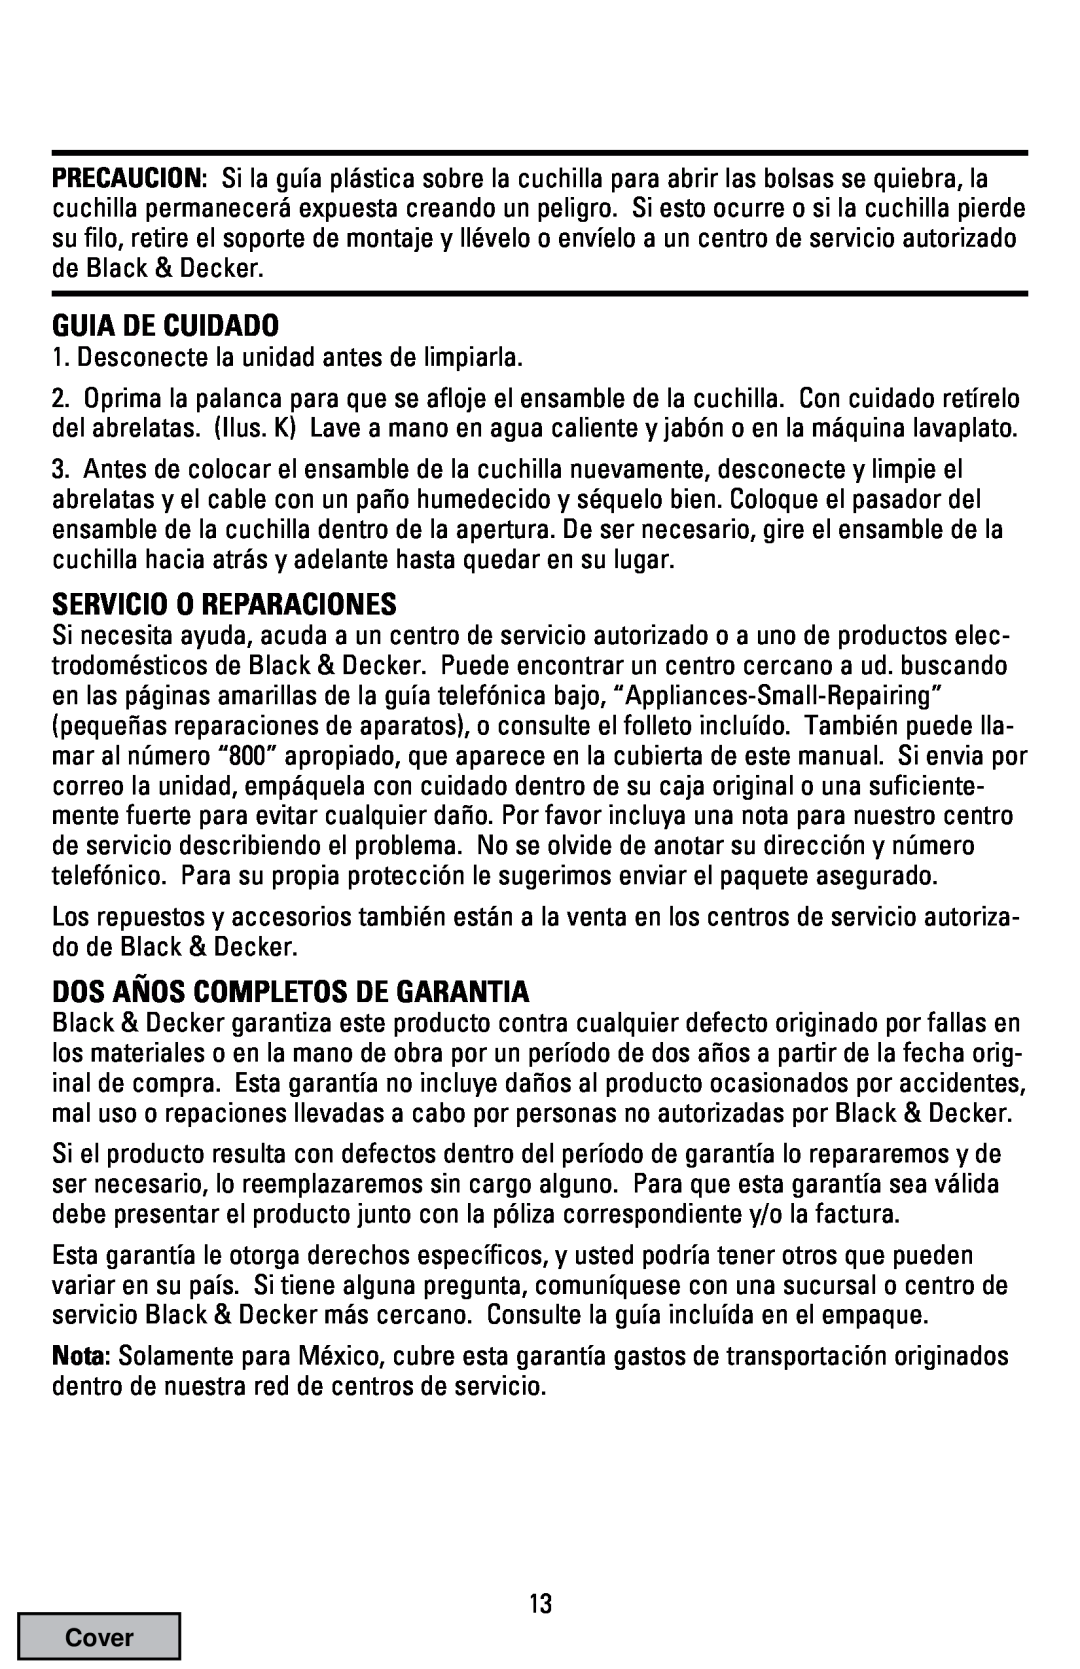 Black & Decker EC70 manual Guia De Cuidado, Servicio O Reparaciones, Dos Años Completos De Garantia 